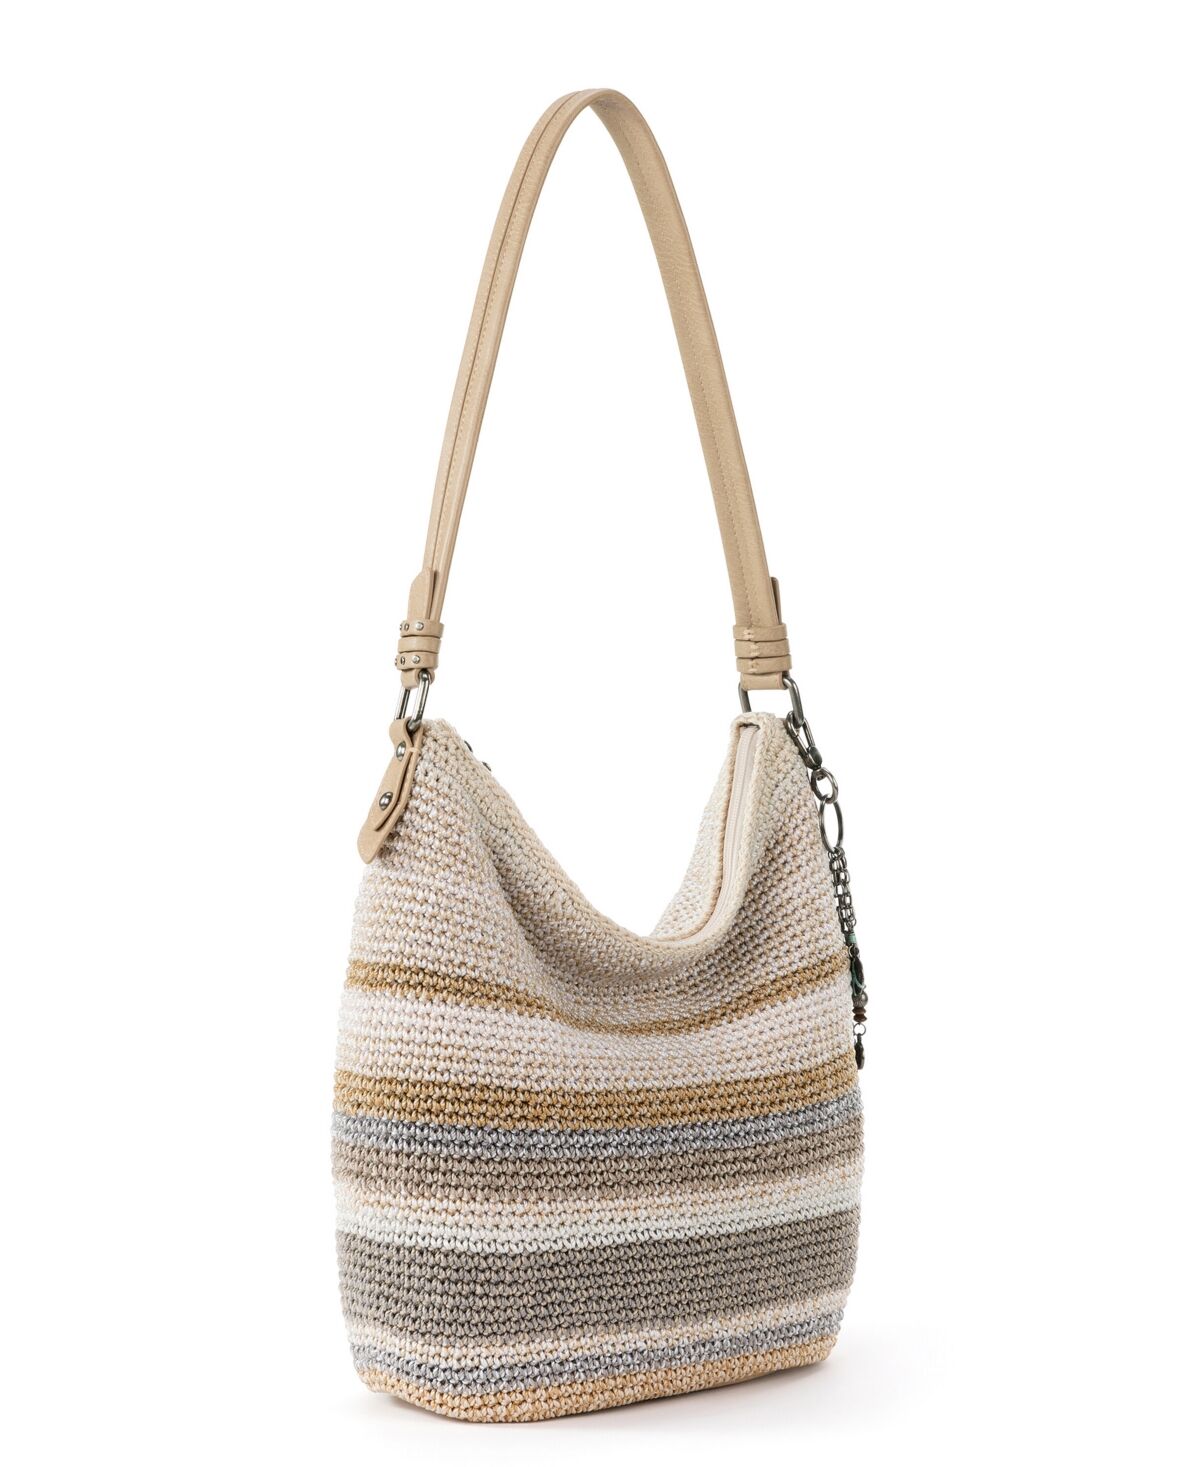 The Sak Sequoia Crochet Hobo Medium Handbag - Sand Stripe